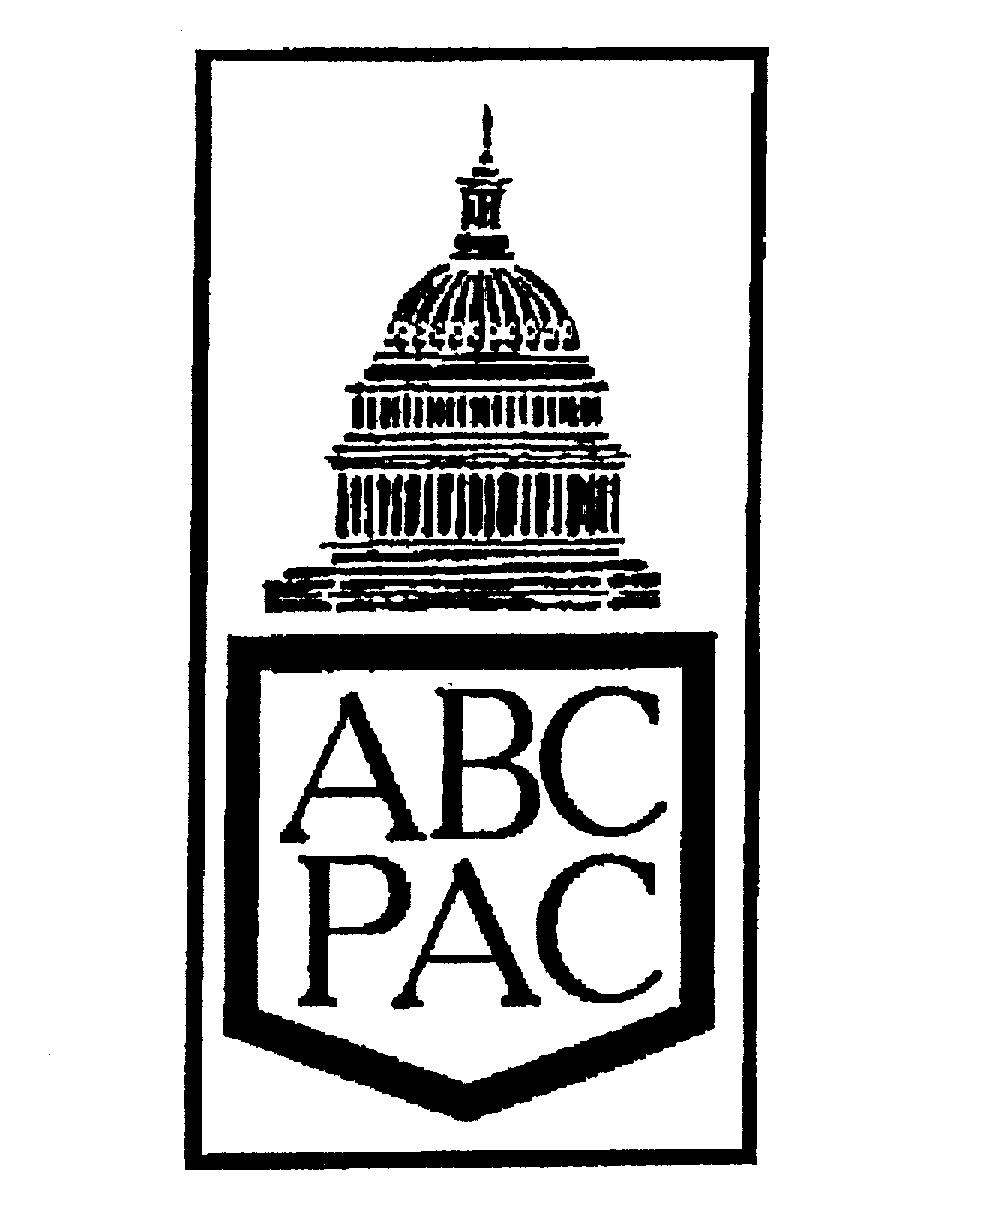  ABC PAC